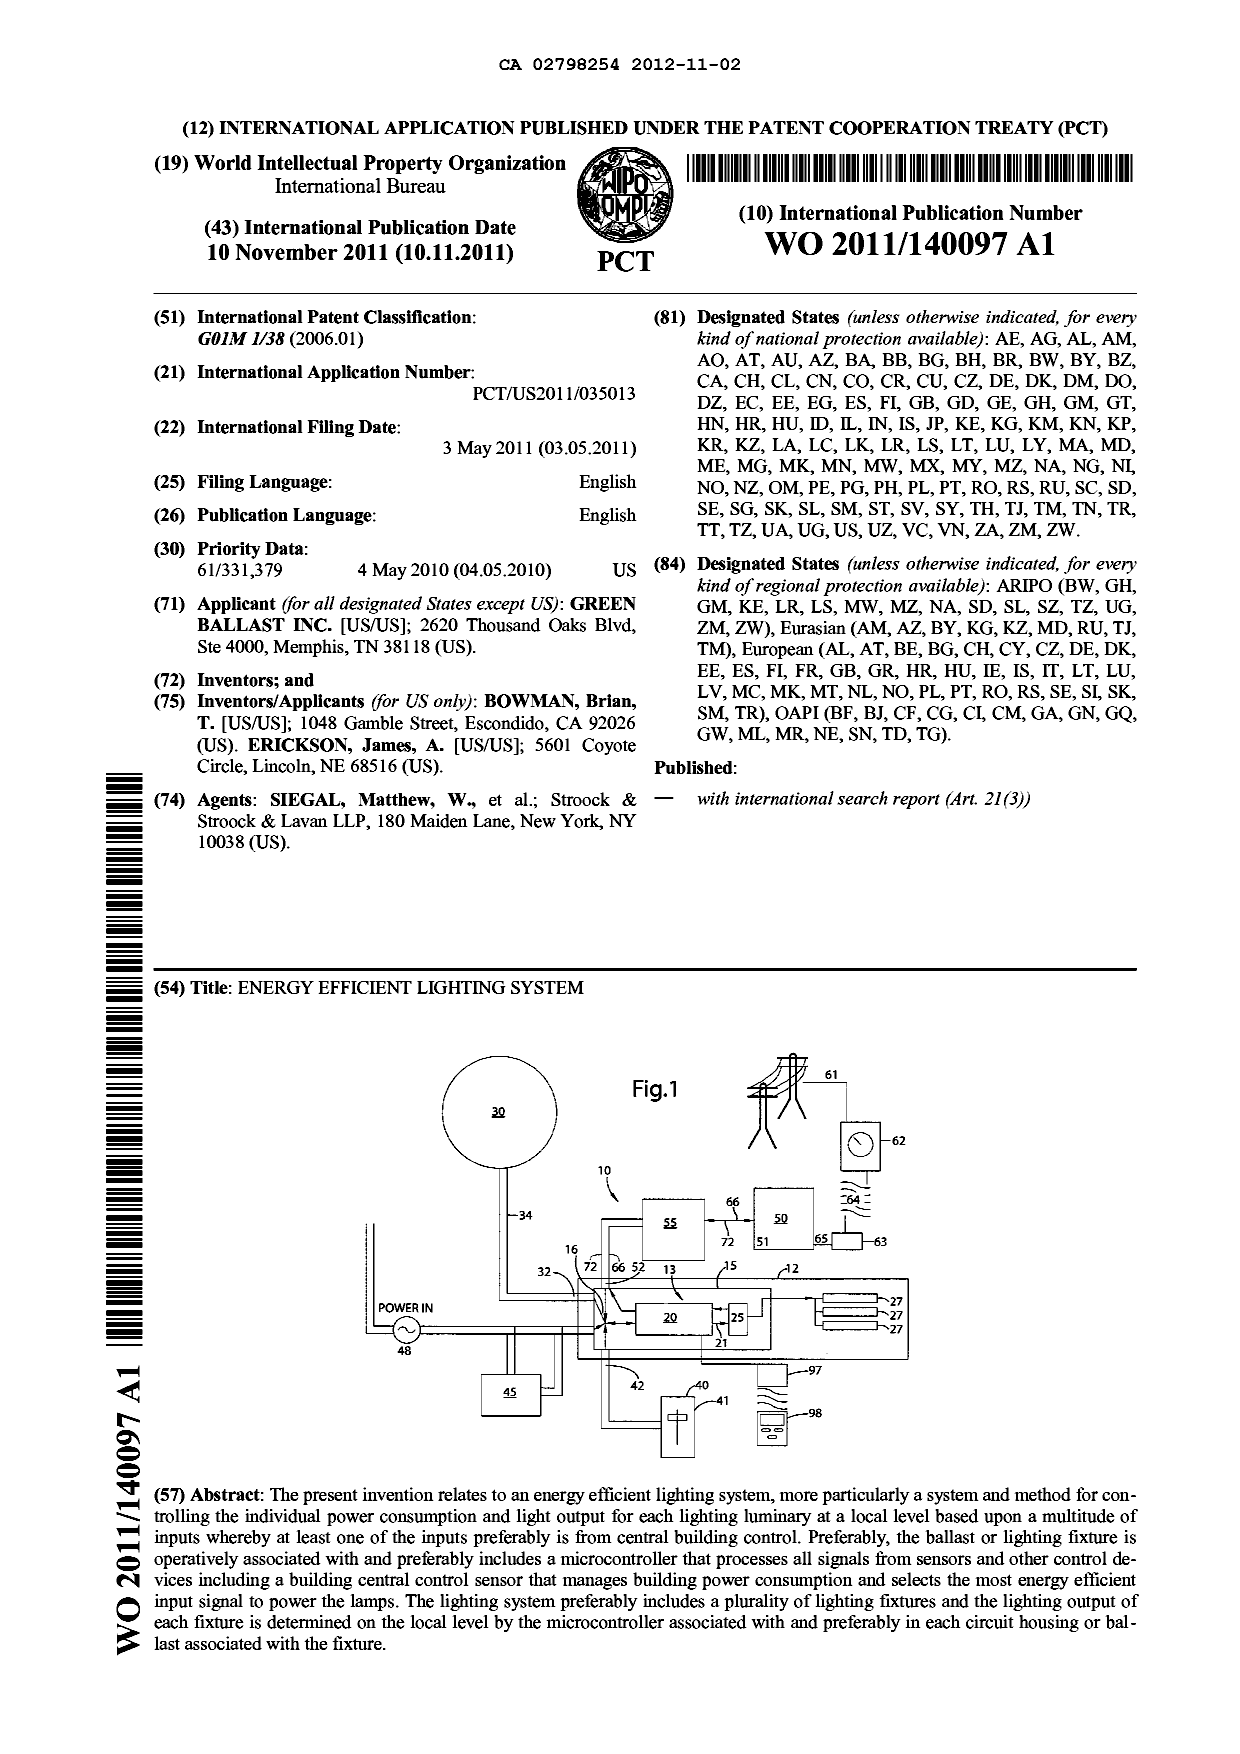 Document de brevet canadien 2798254. Abrégé 20121102. Image 1 de 1